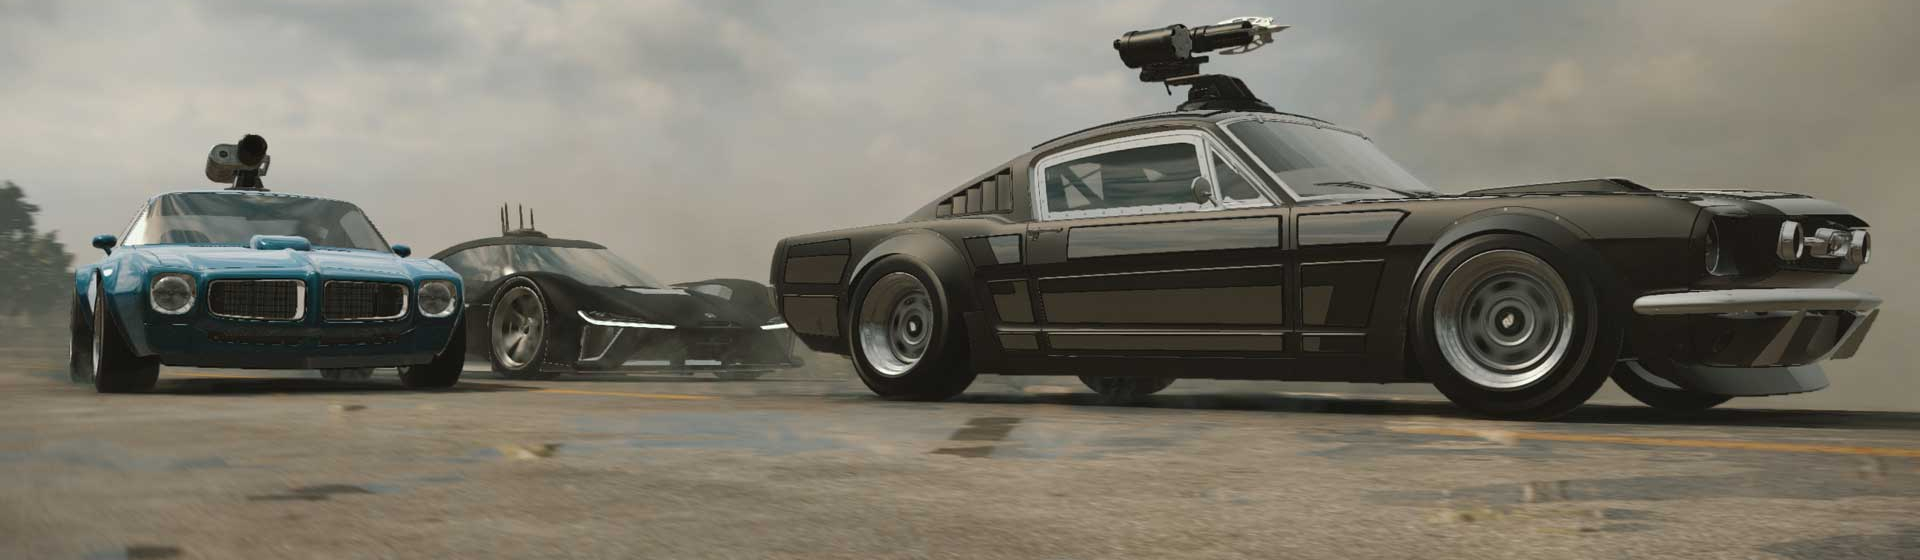 Fast & Furious Crossroads ra mắt dựa trên loạt phim hành động đình đám